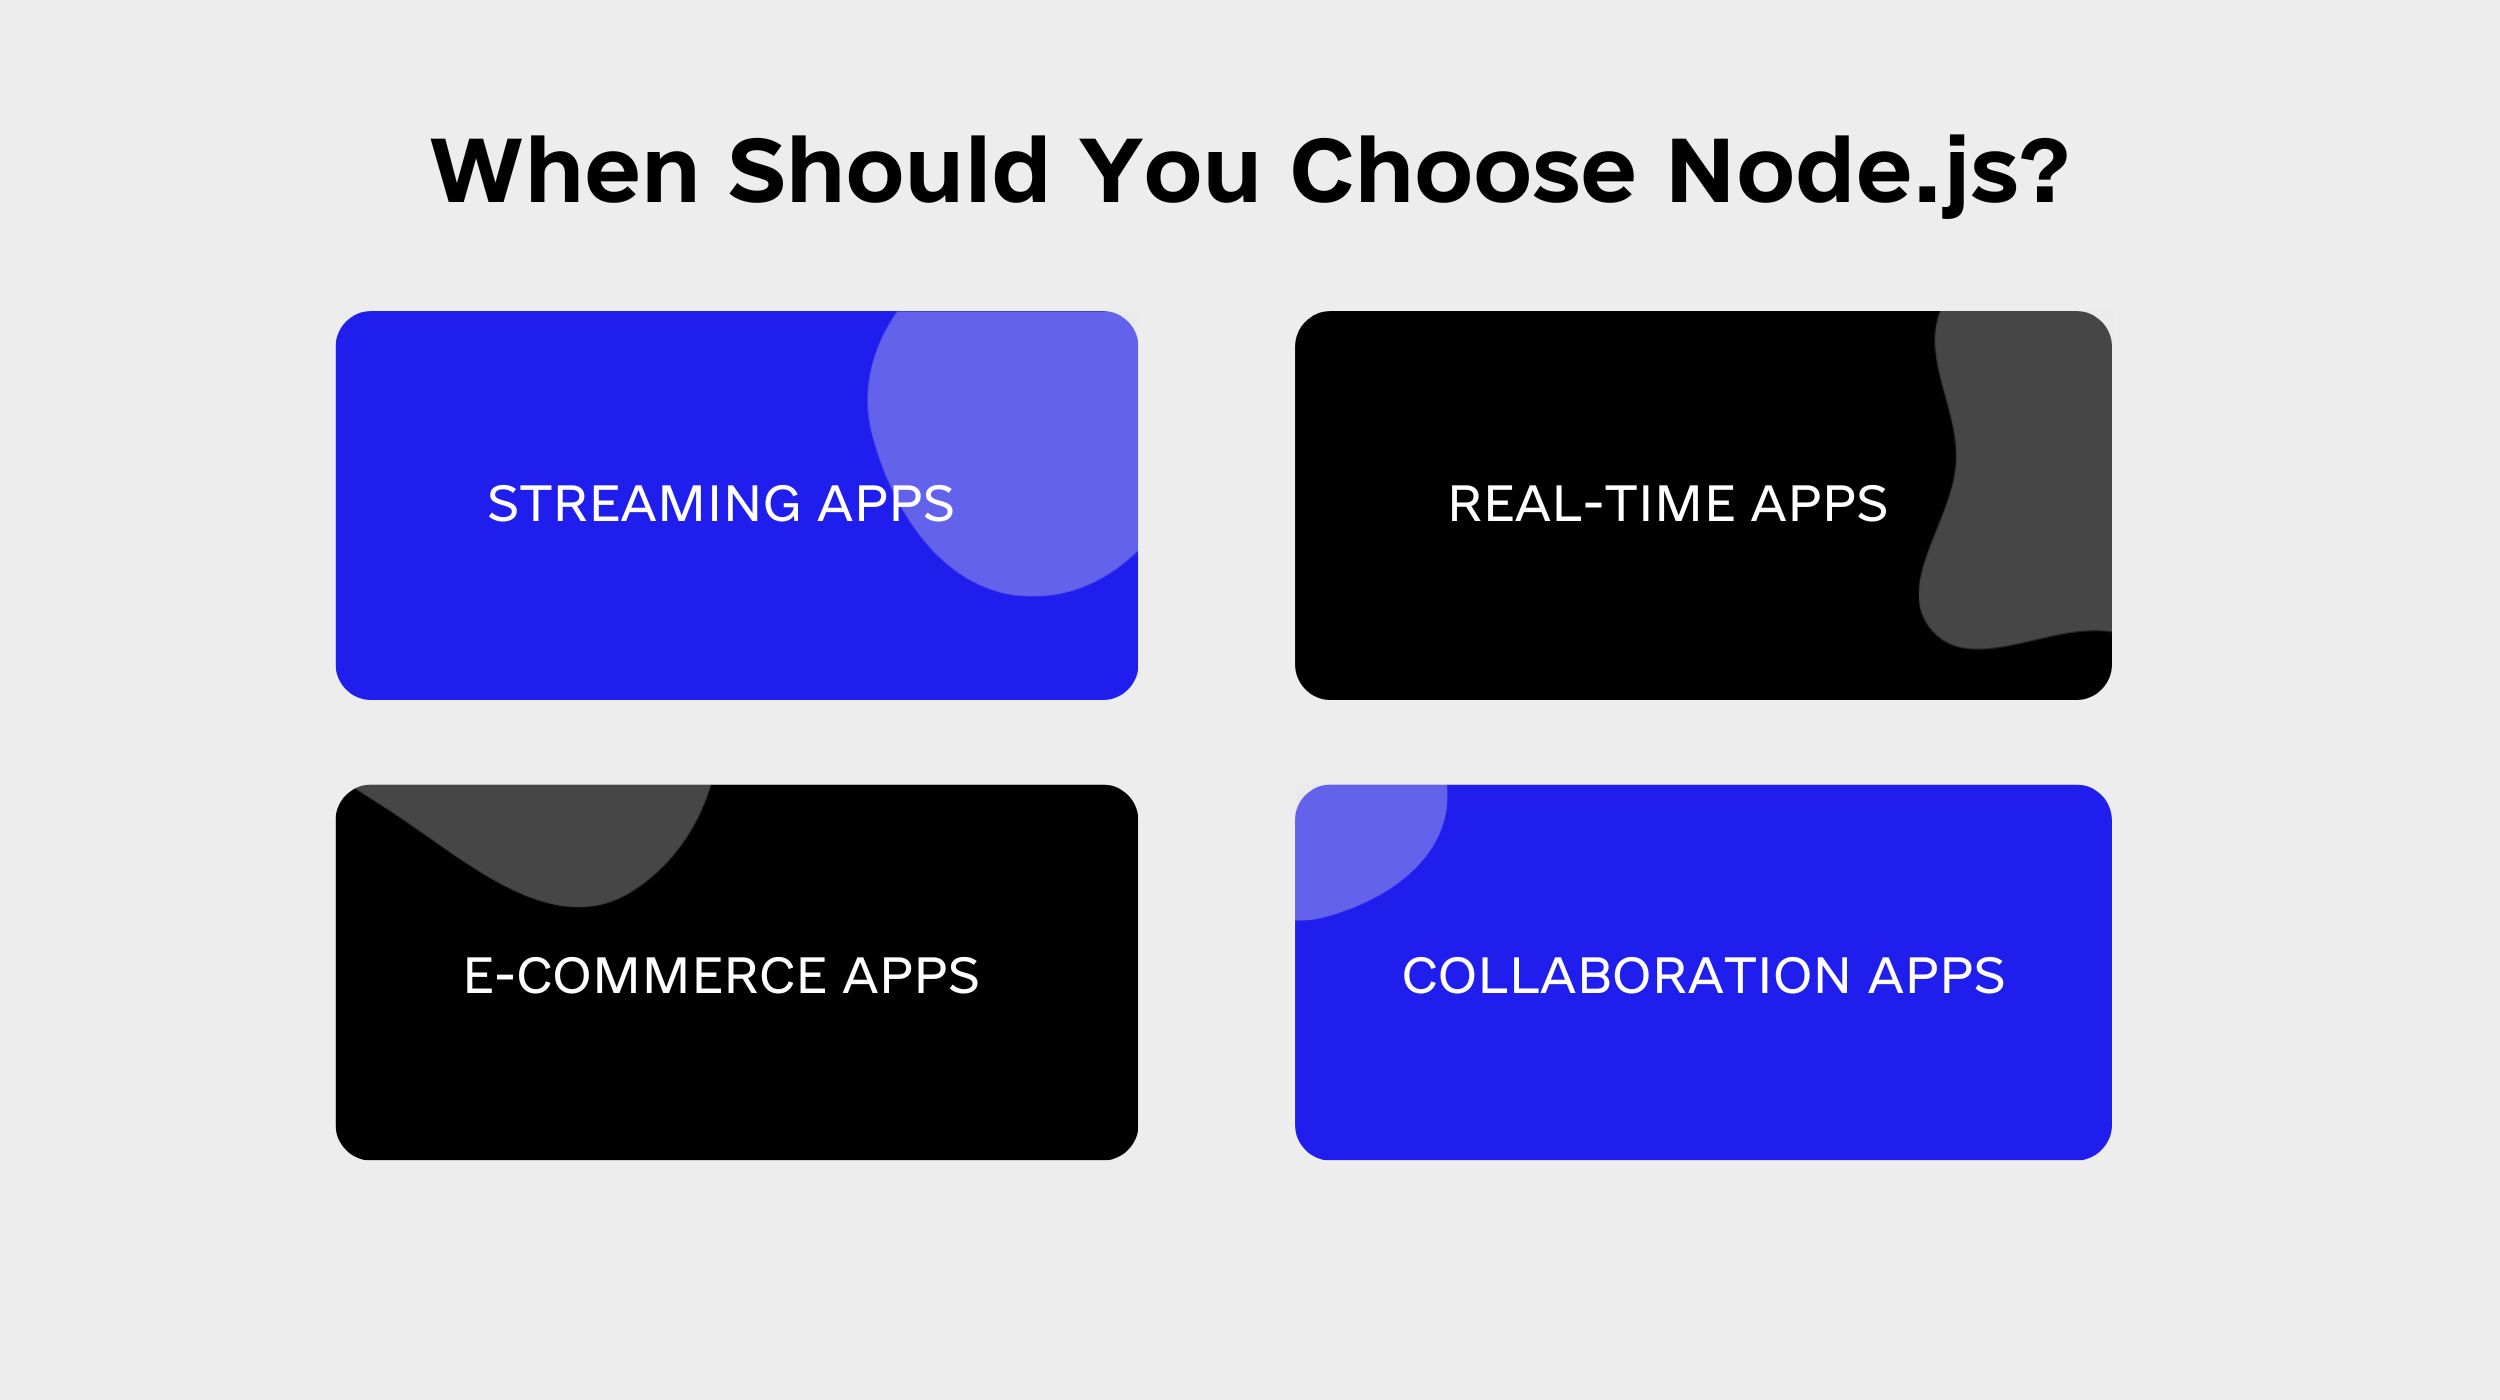 When Should You Choose Node.js?